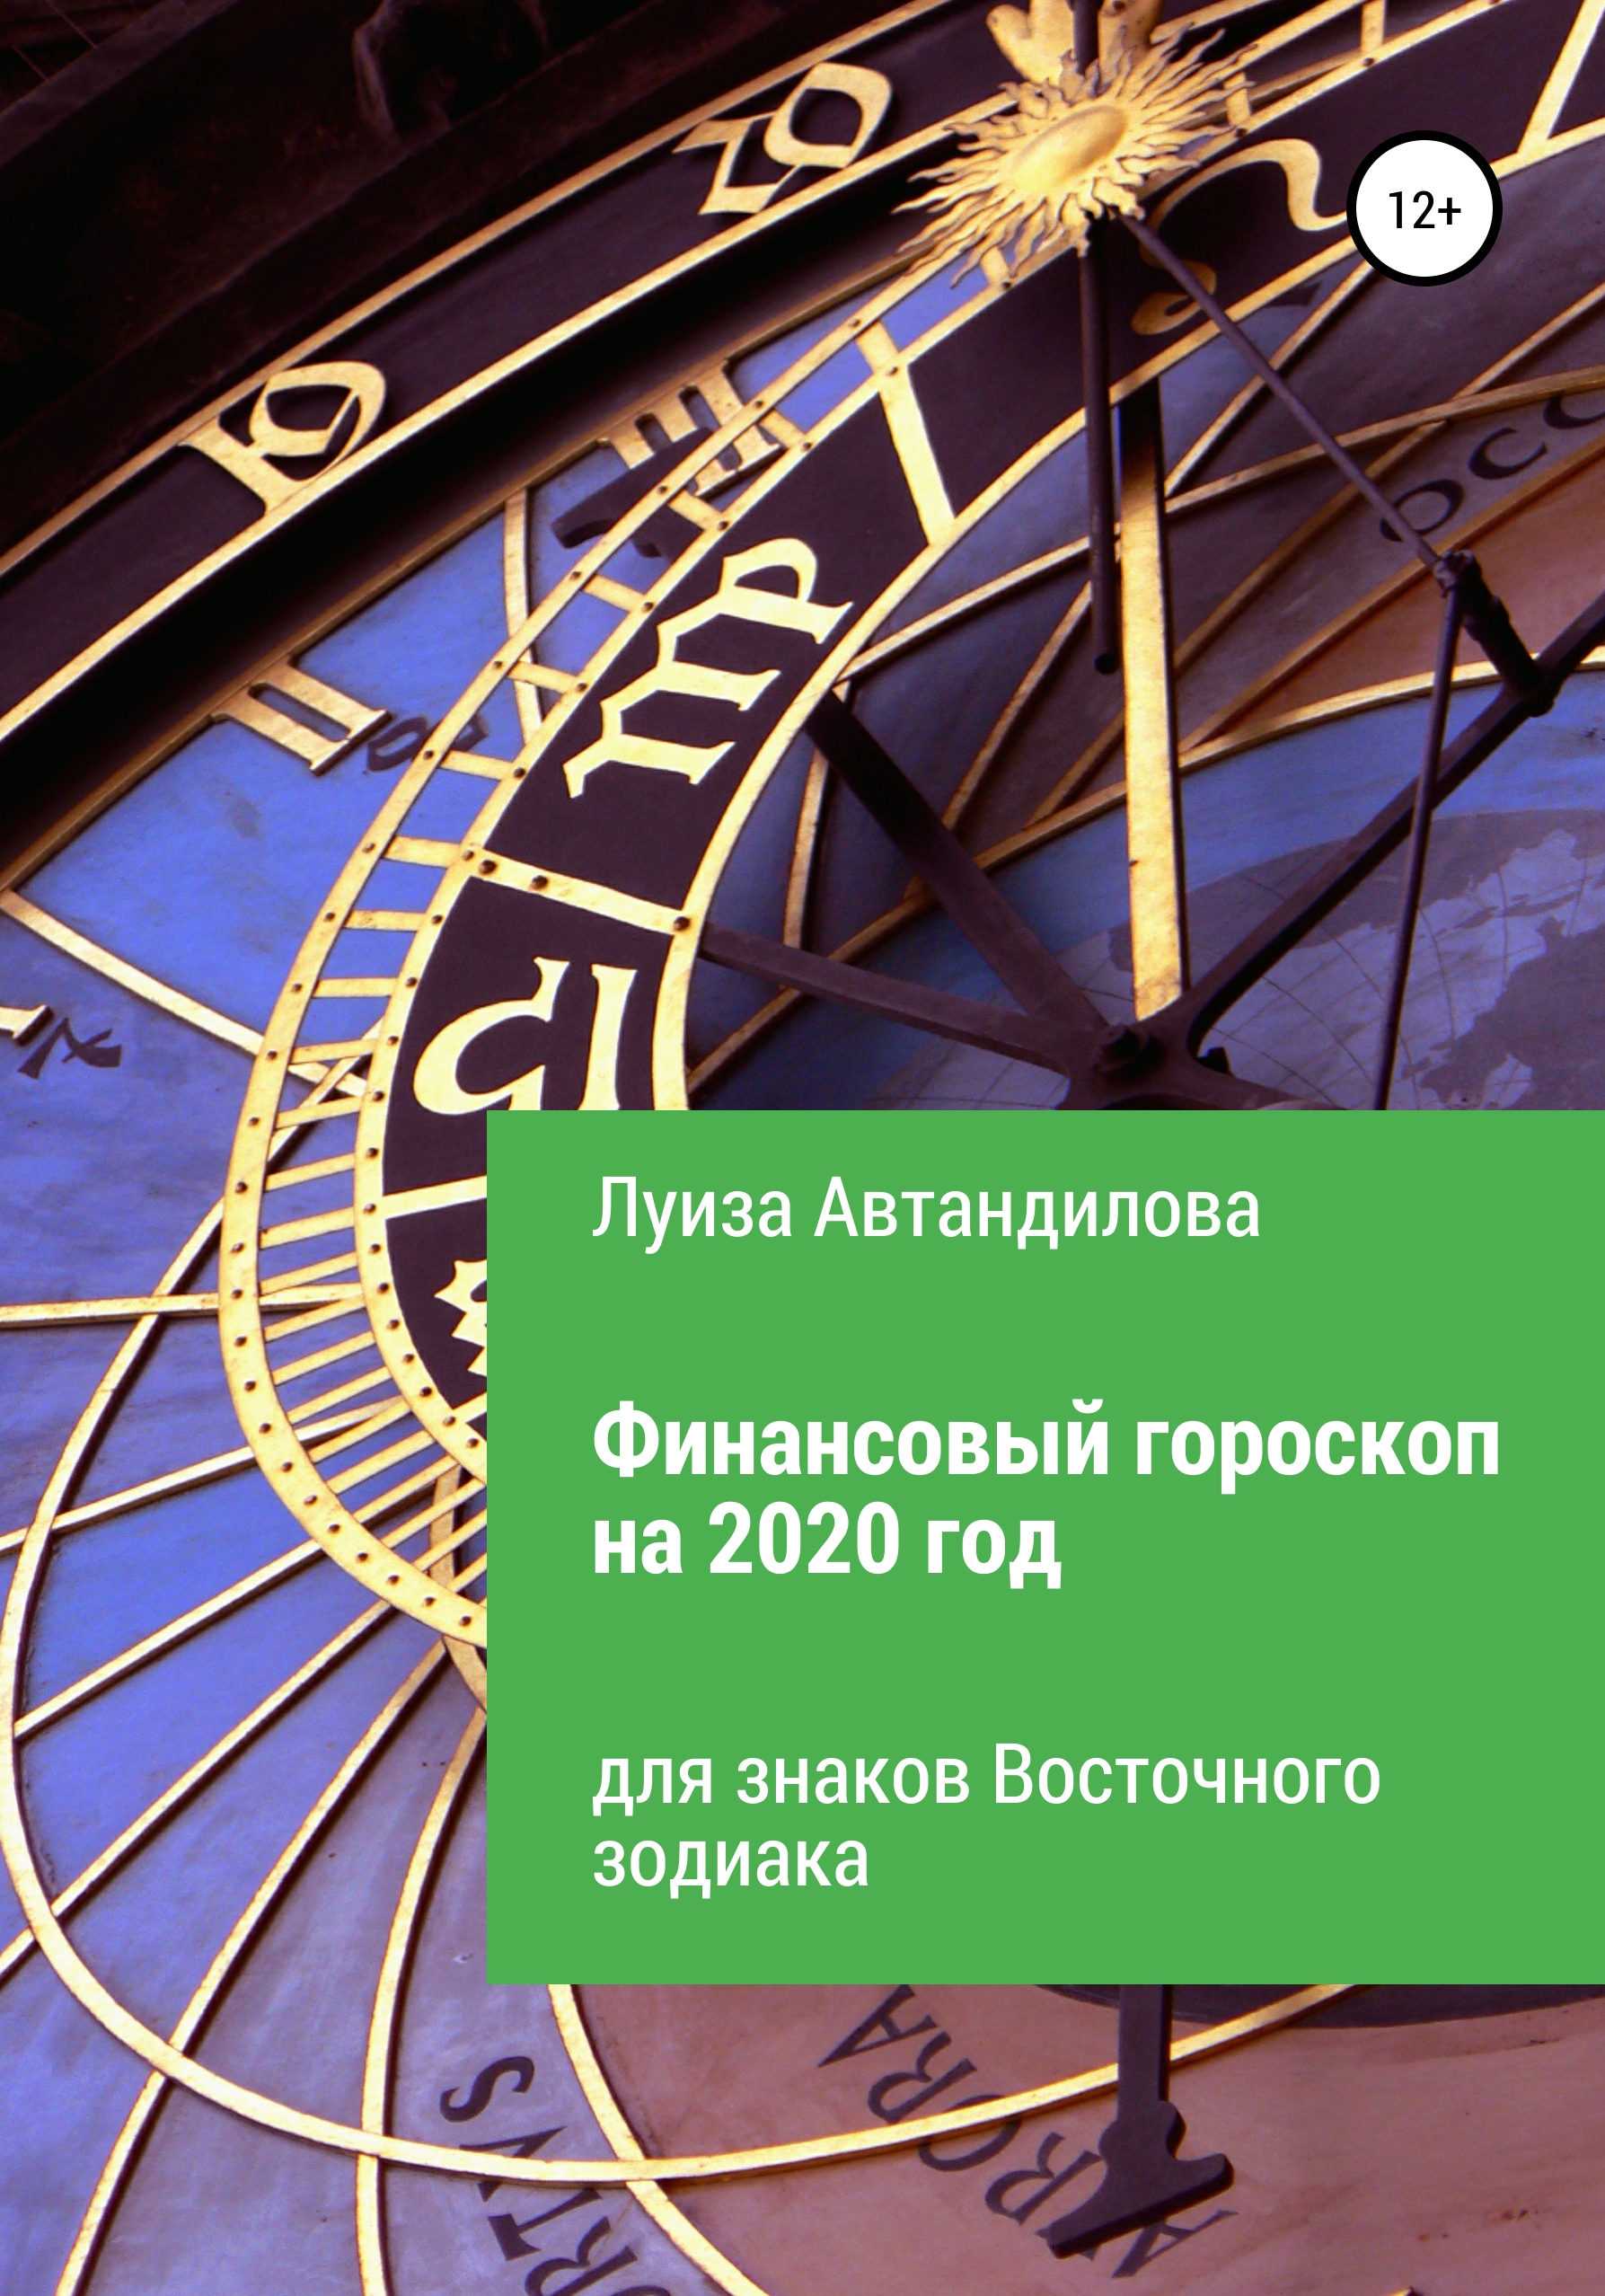 Финансовый гороскоп на 2020 год для знаков Восточного зодиака